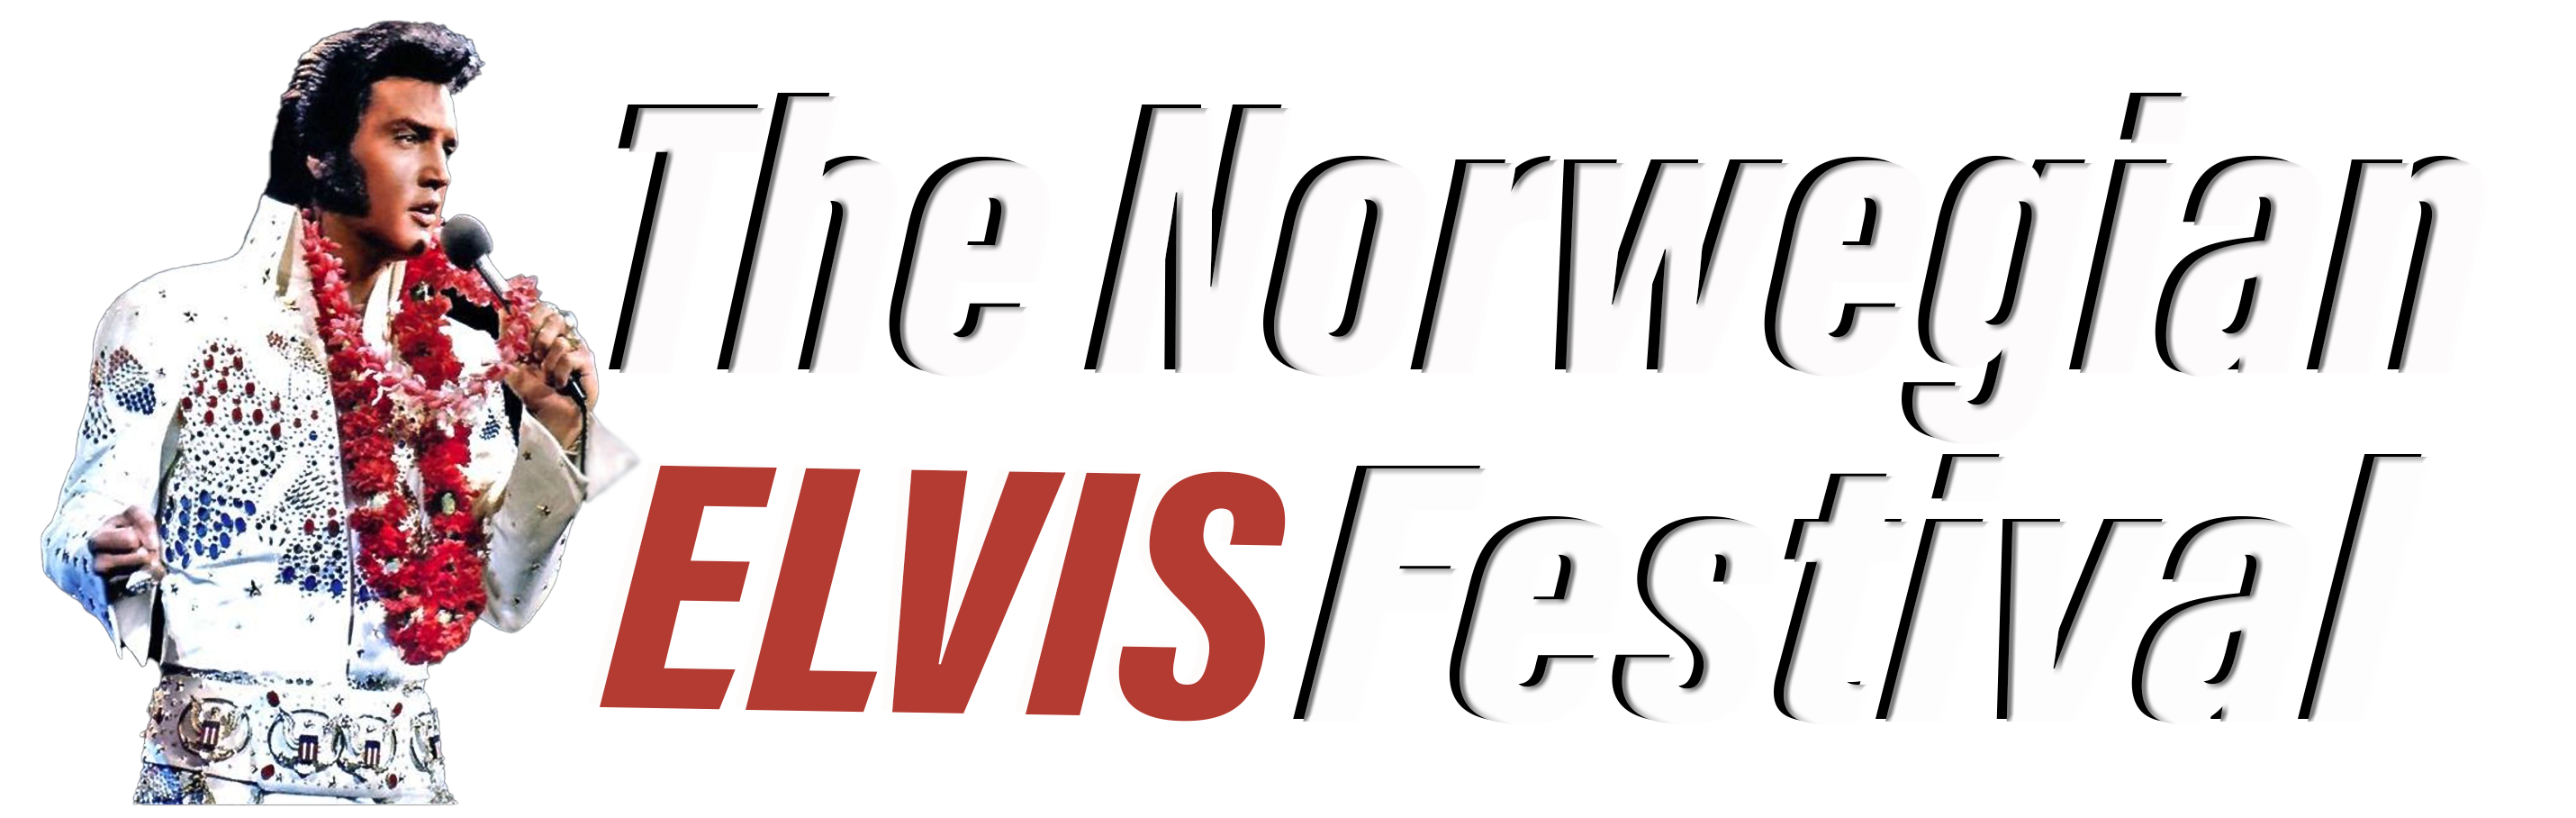 The Norwegian Elvis Festival